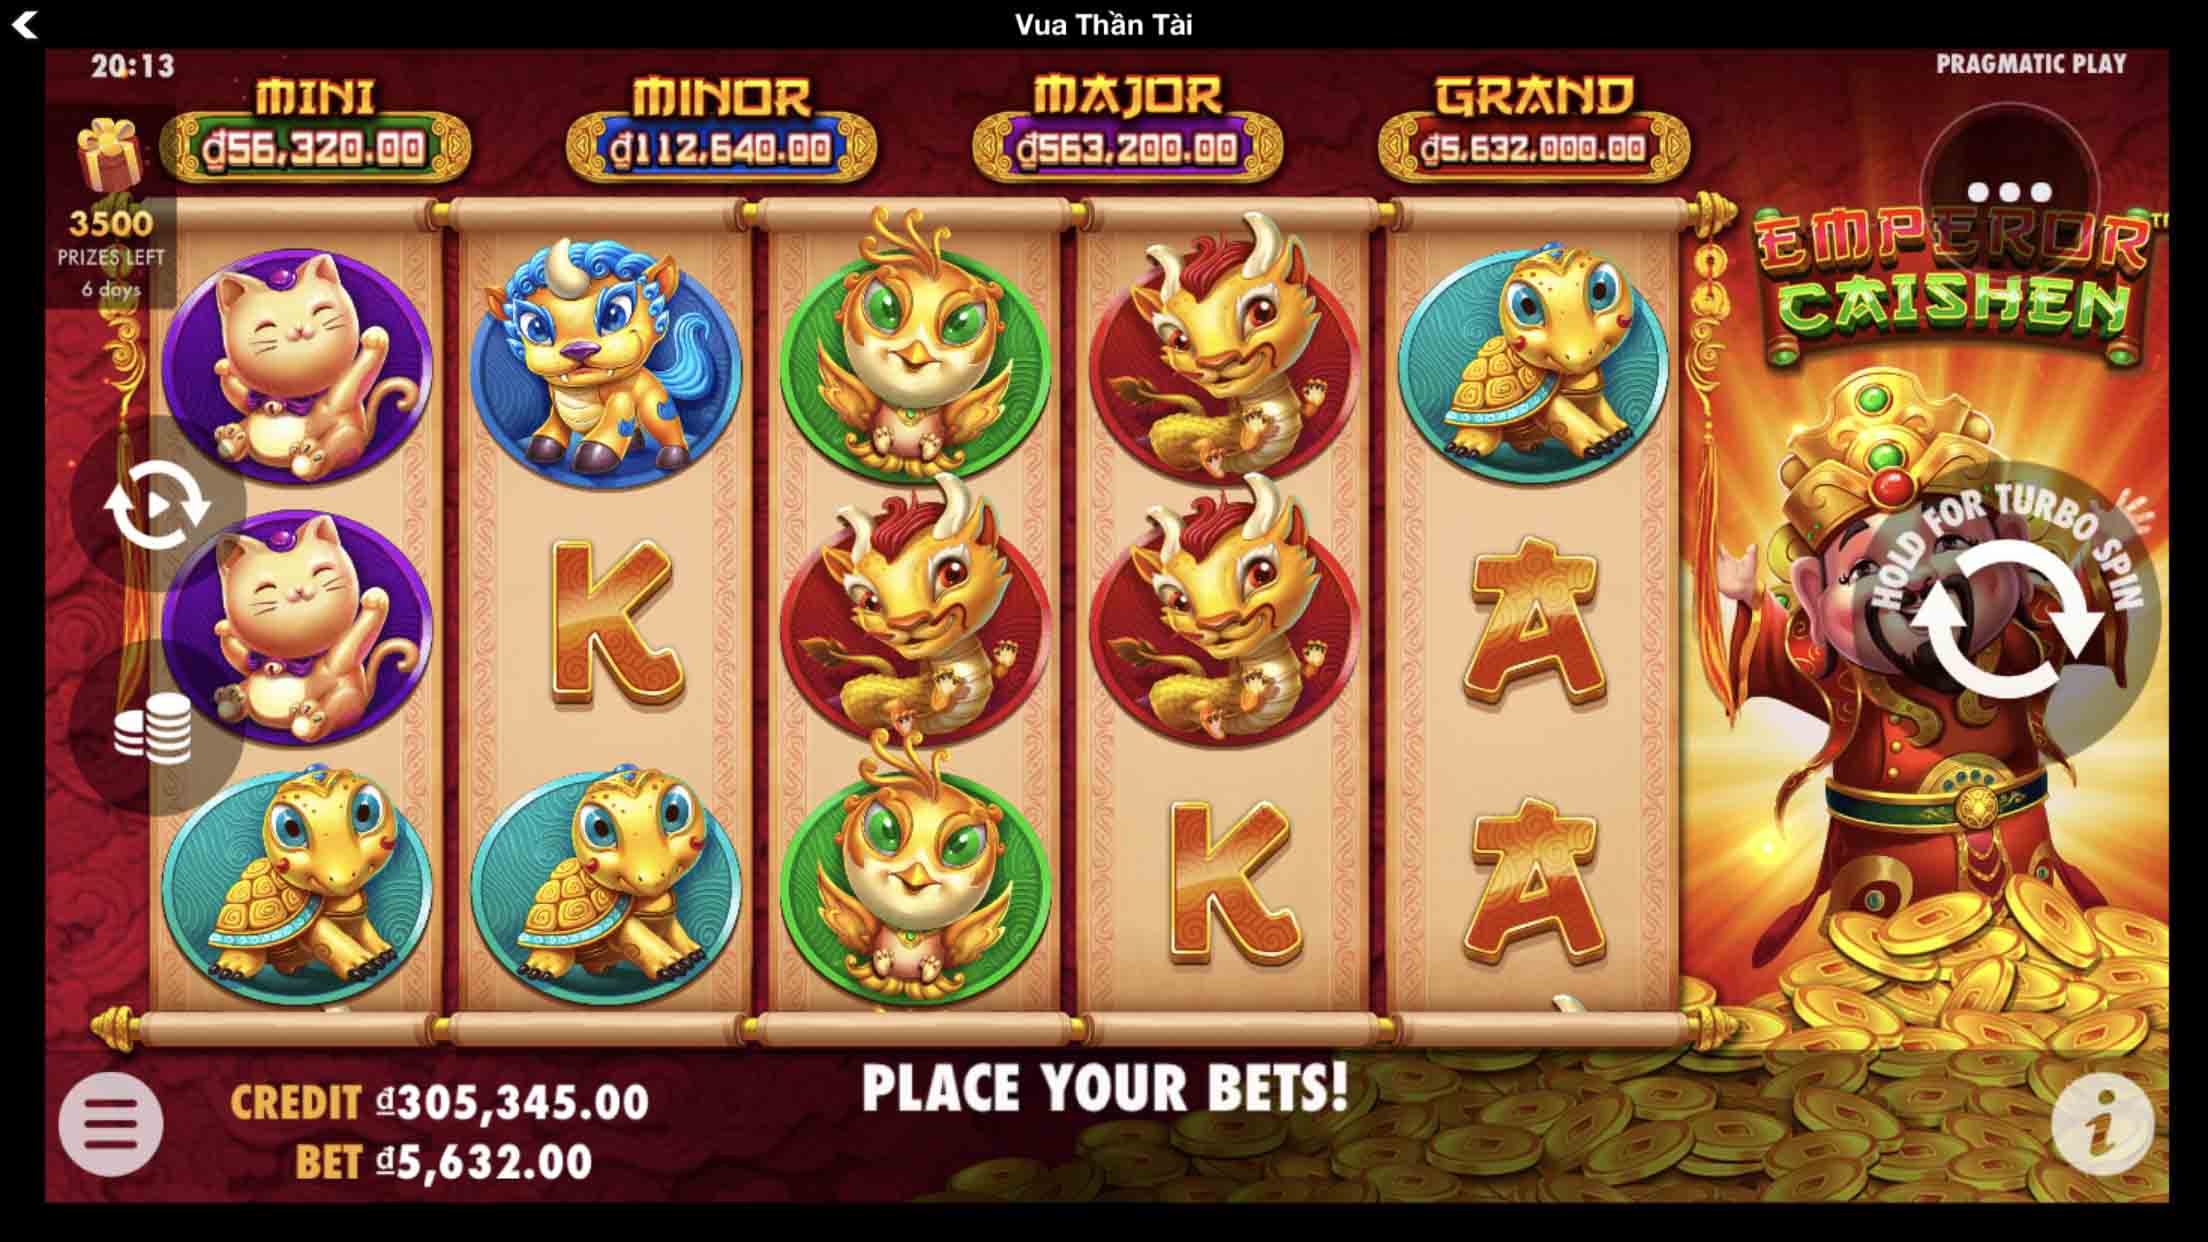 Tại sao bạn nên chọn chơi Slot game quốc tế tại Kingfun?